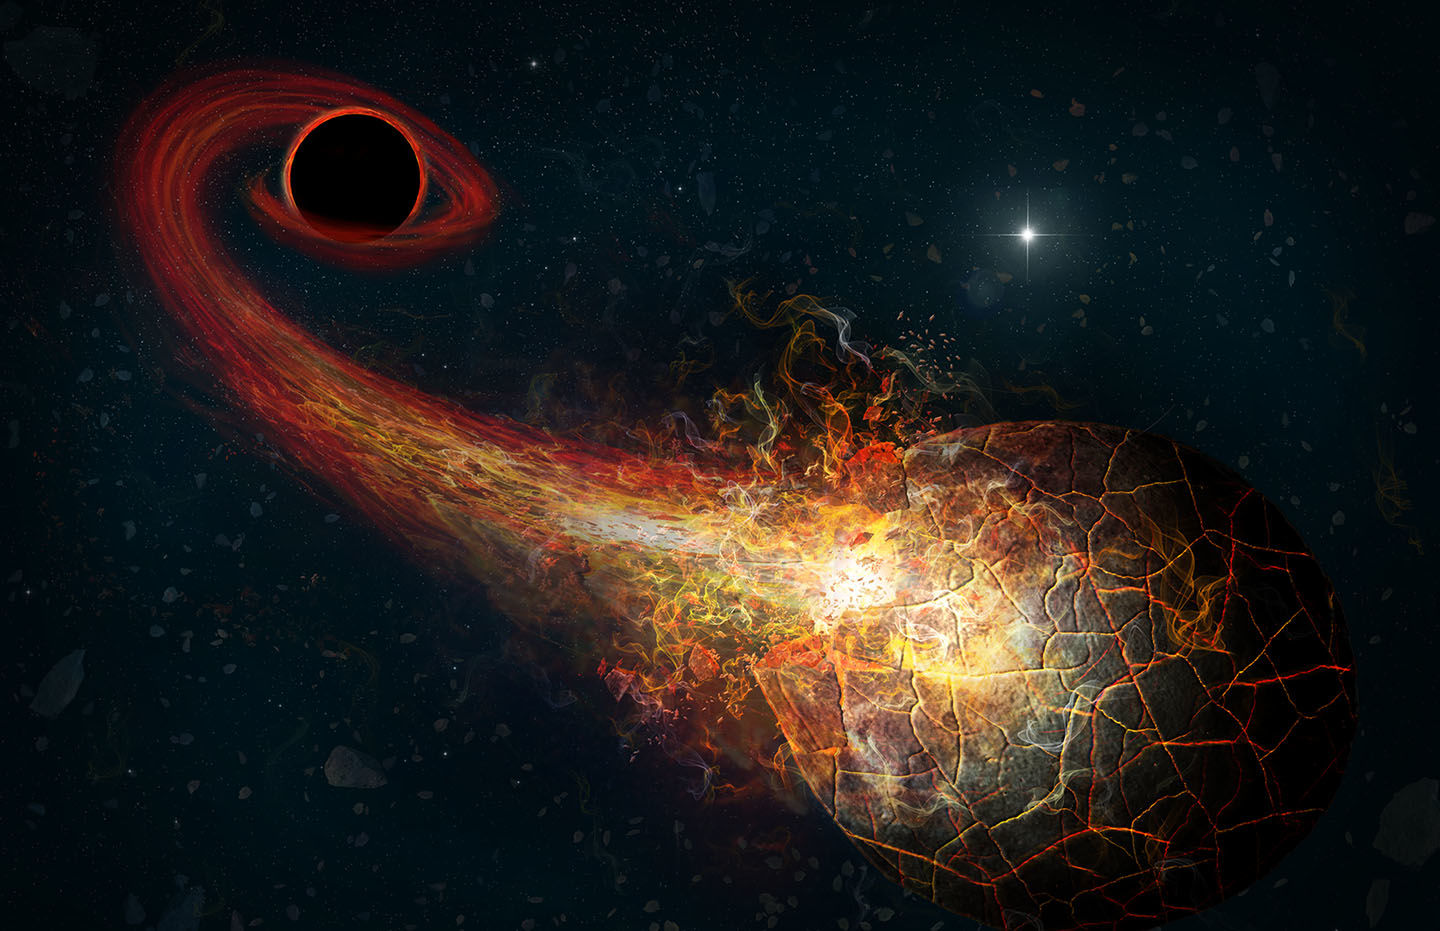 第9惑星は原始ブラックホール 説を確かめる計画 ハーバードの研究者が提案 Engadget 日本版